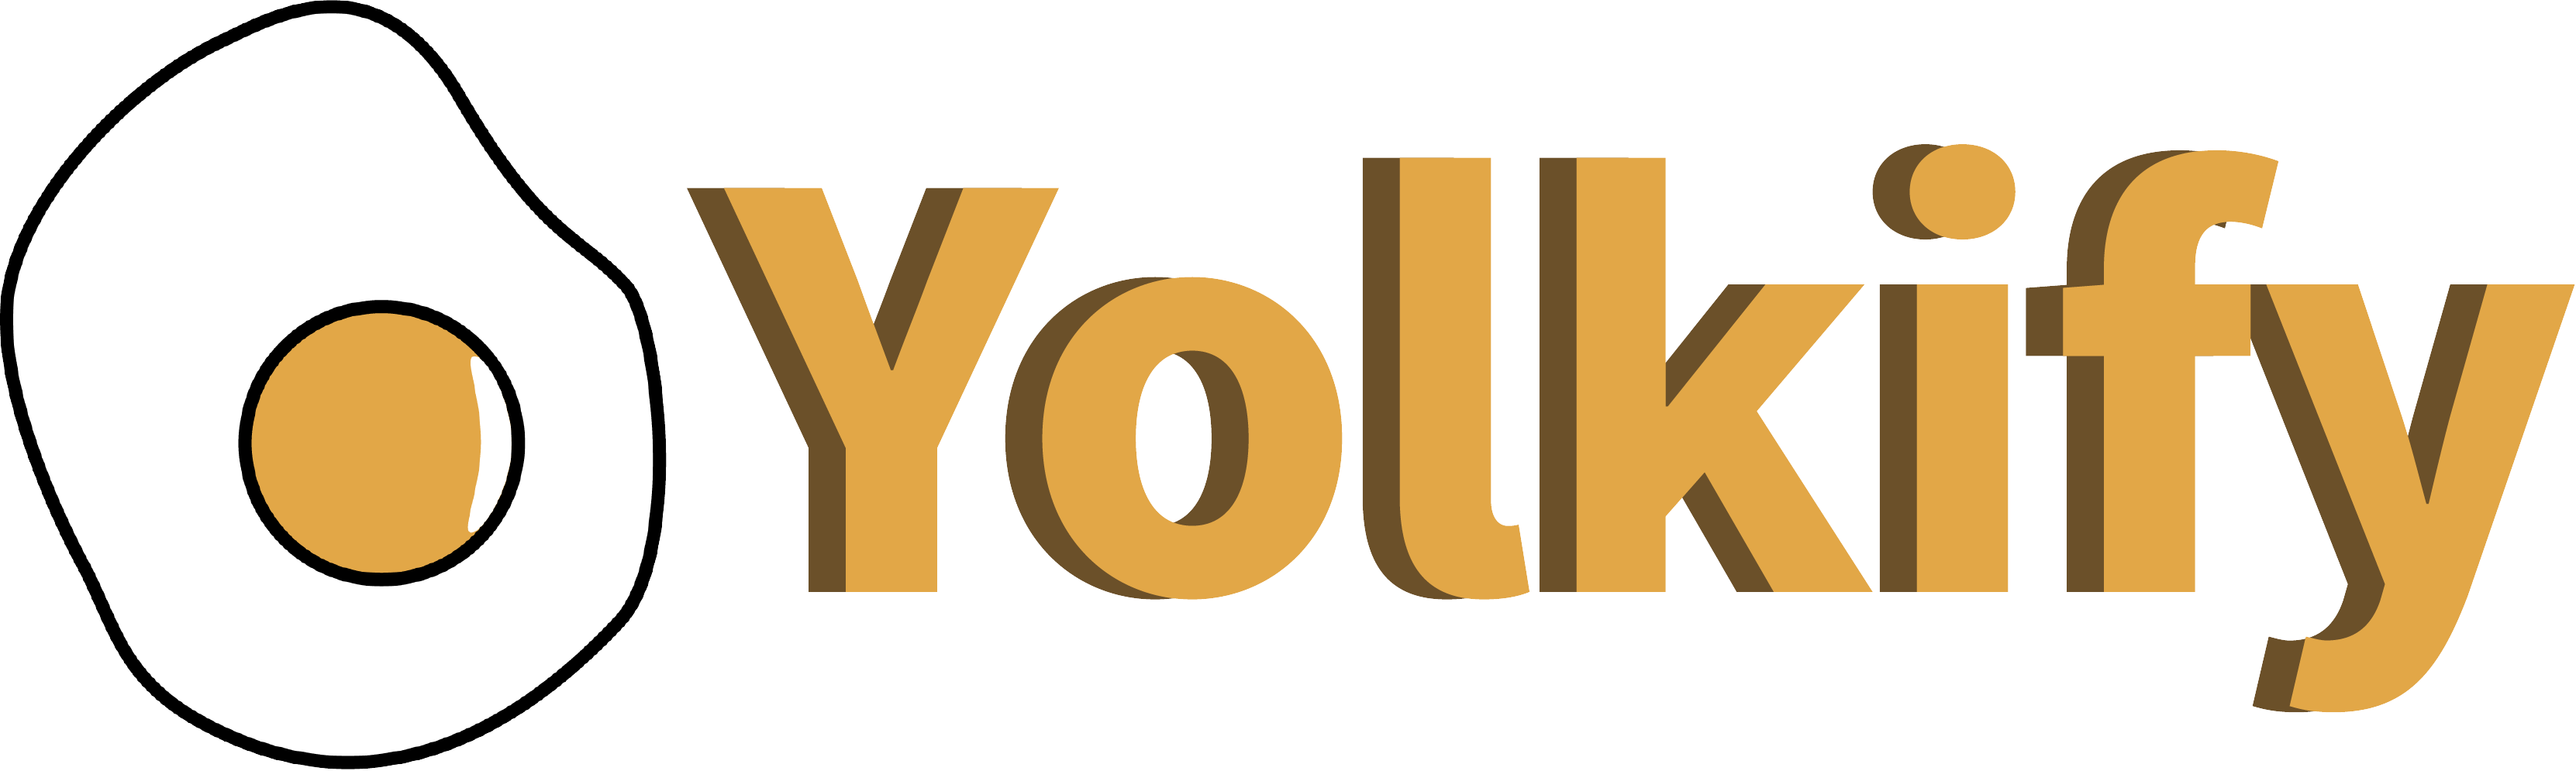 yolkify name and logo